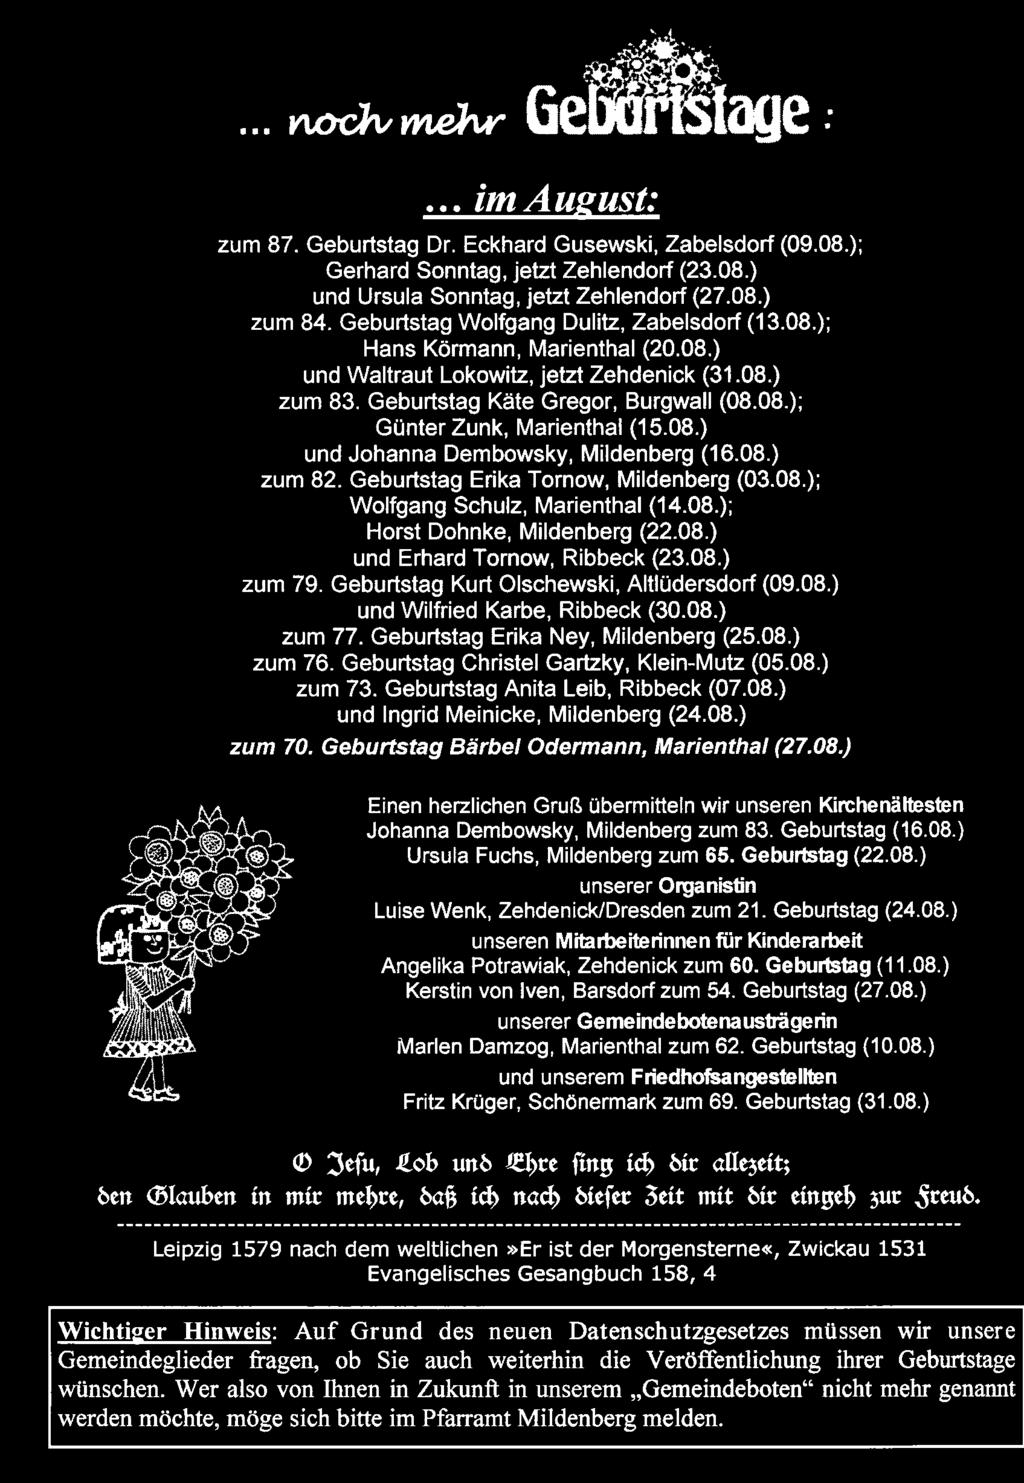 Geburtstag Christel Gartzky, Klein-Mutz (05.08.) zum 73. Geburtstag Anita Leib, Ribbeck (07.08.) und lngrid Meinicke, Mildenberg (24.08.) zum 70. Geburtstag Bärbel Odermann, Marienthal (27.08.) Einen herzlichen Gruß übermitteln wir unseren Kirchenältesten Johanna Dembowsky, Mildenberg zum 83.